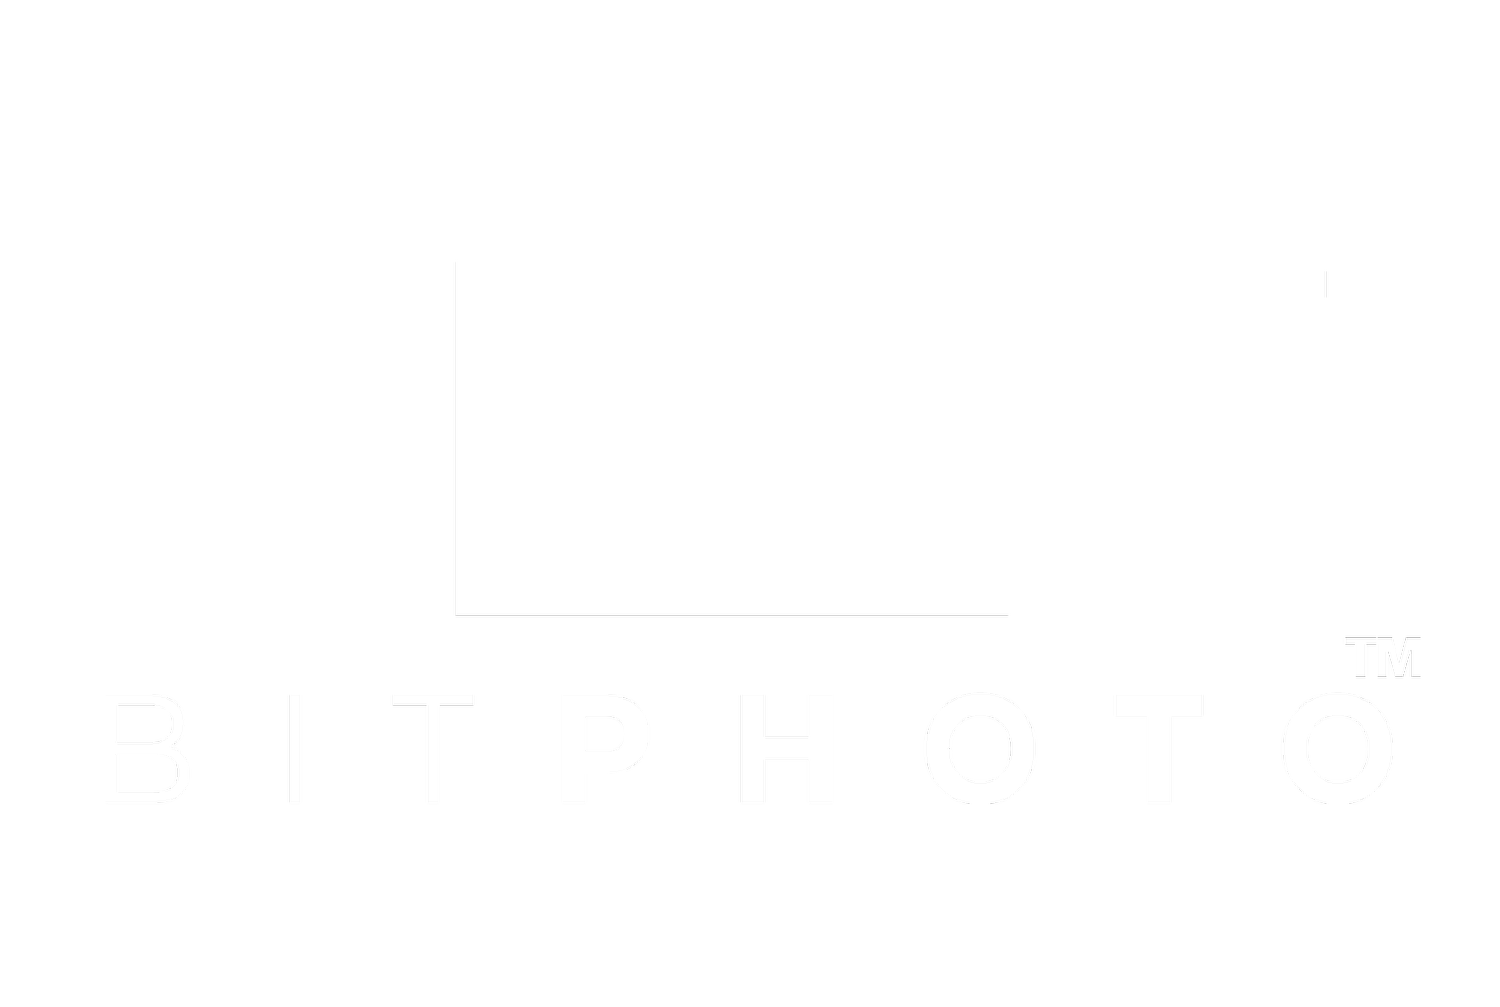 BITPHOTO™